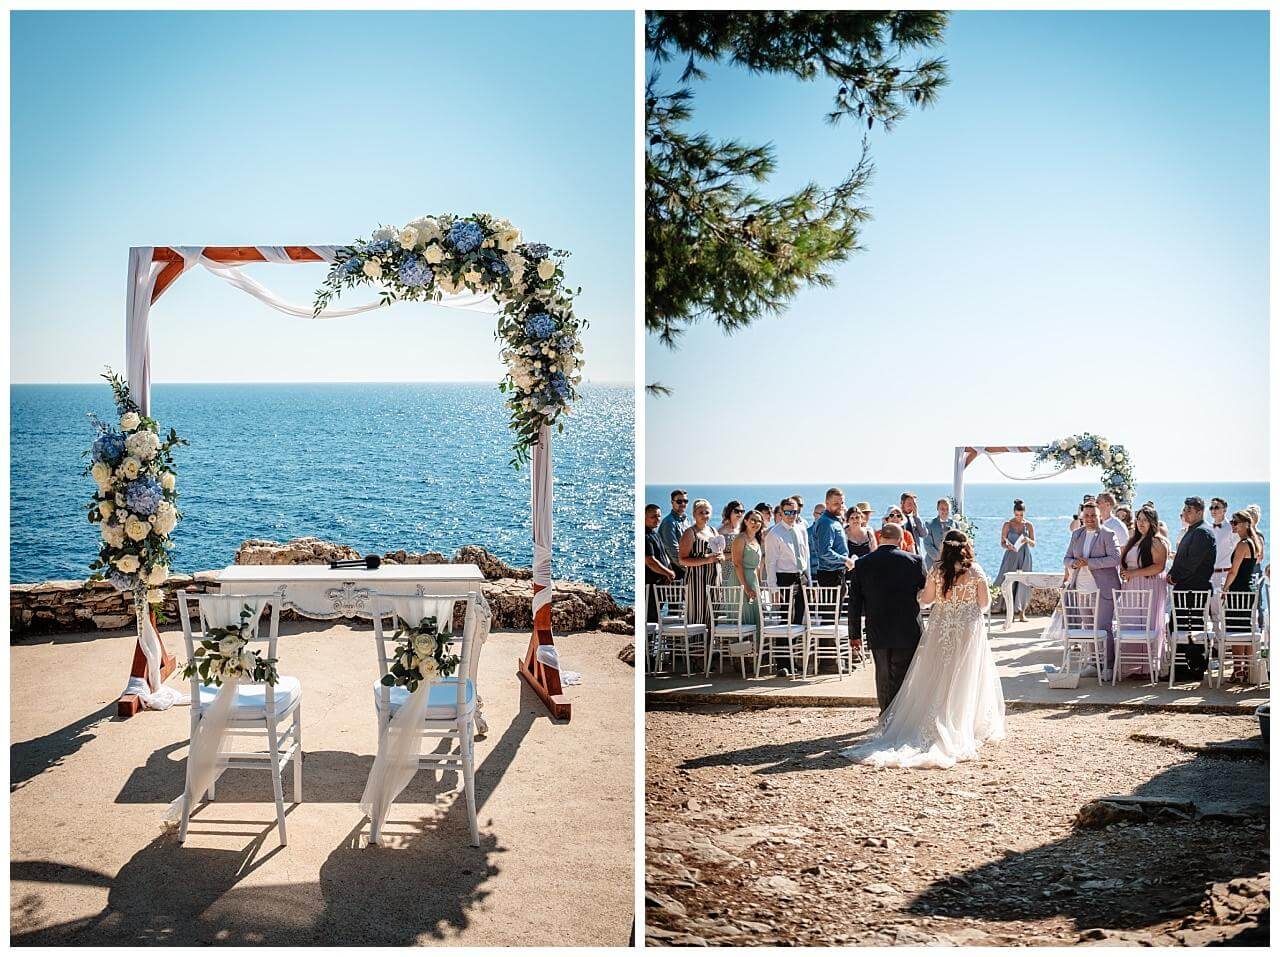 Freie Trauung mit dem Blick aufs Meer bei einer Hochzeit in eiern privaten Finka mit dem Blick aufs Meer